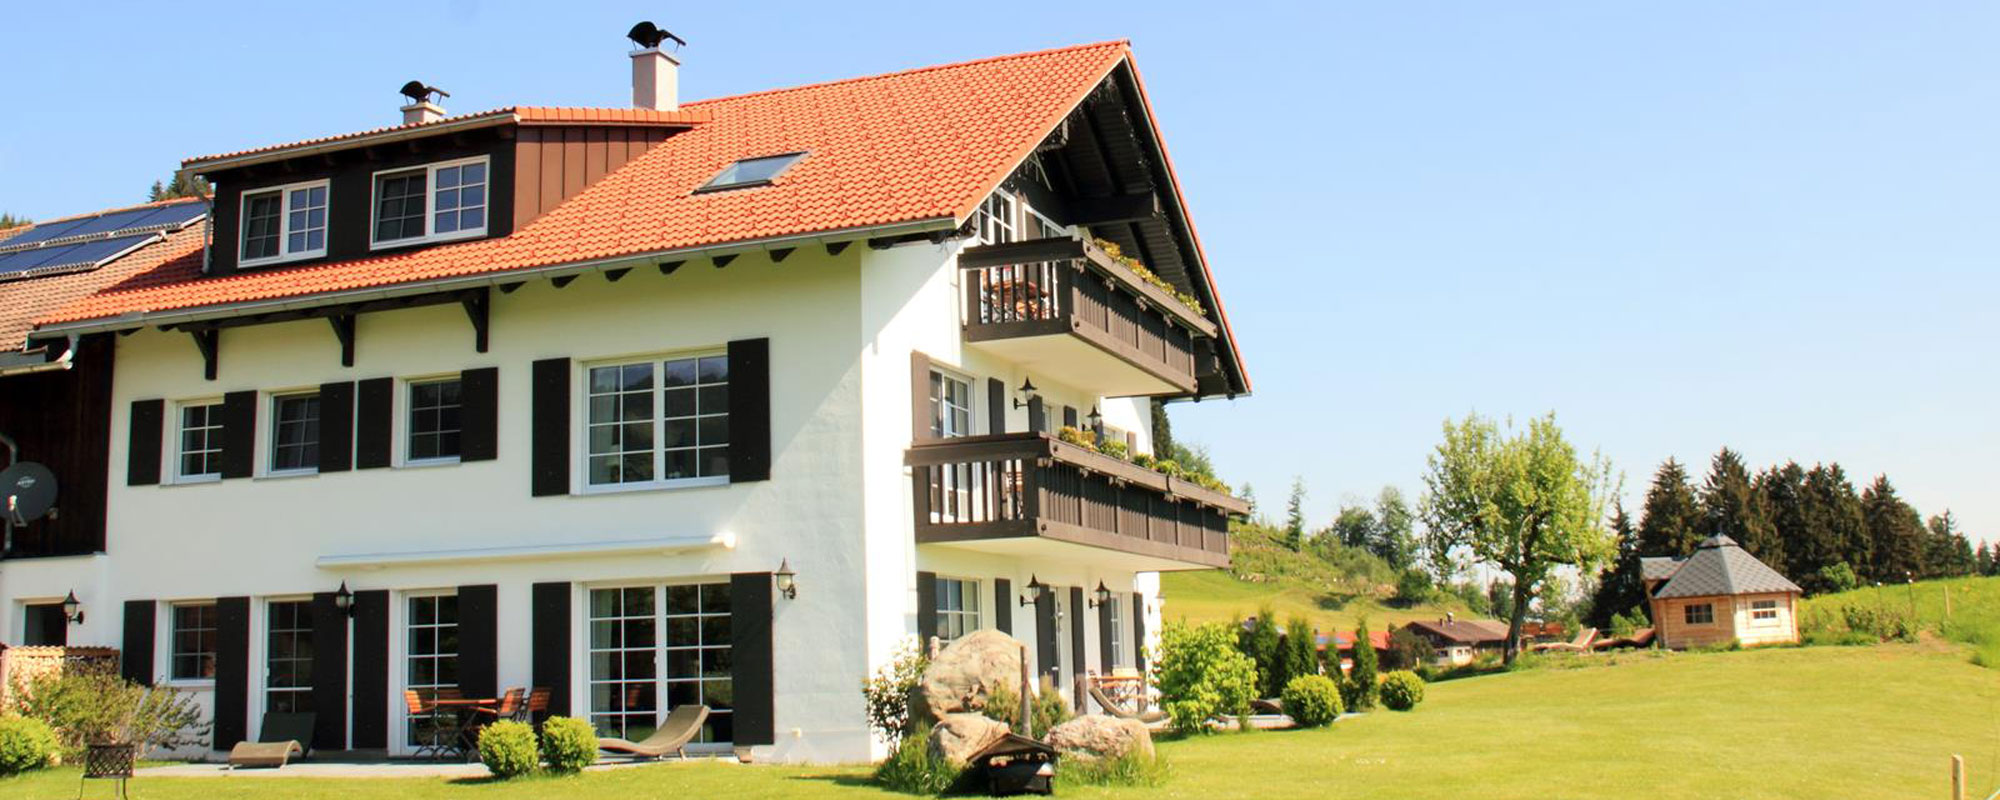 AlpenLodge Allgäu - Ferienhaus in Bayern